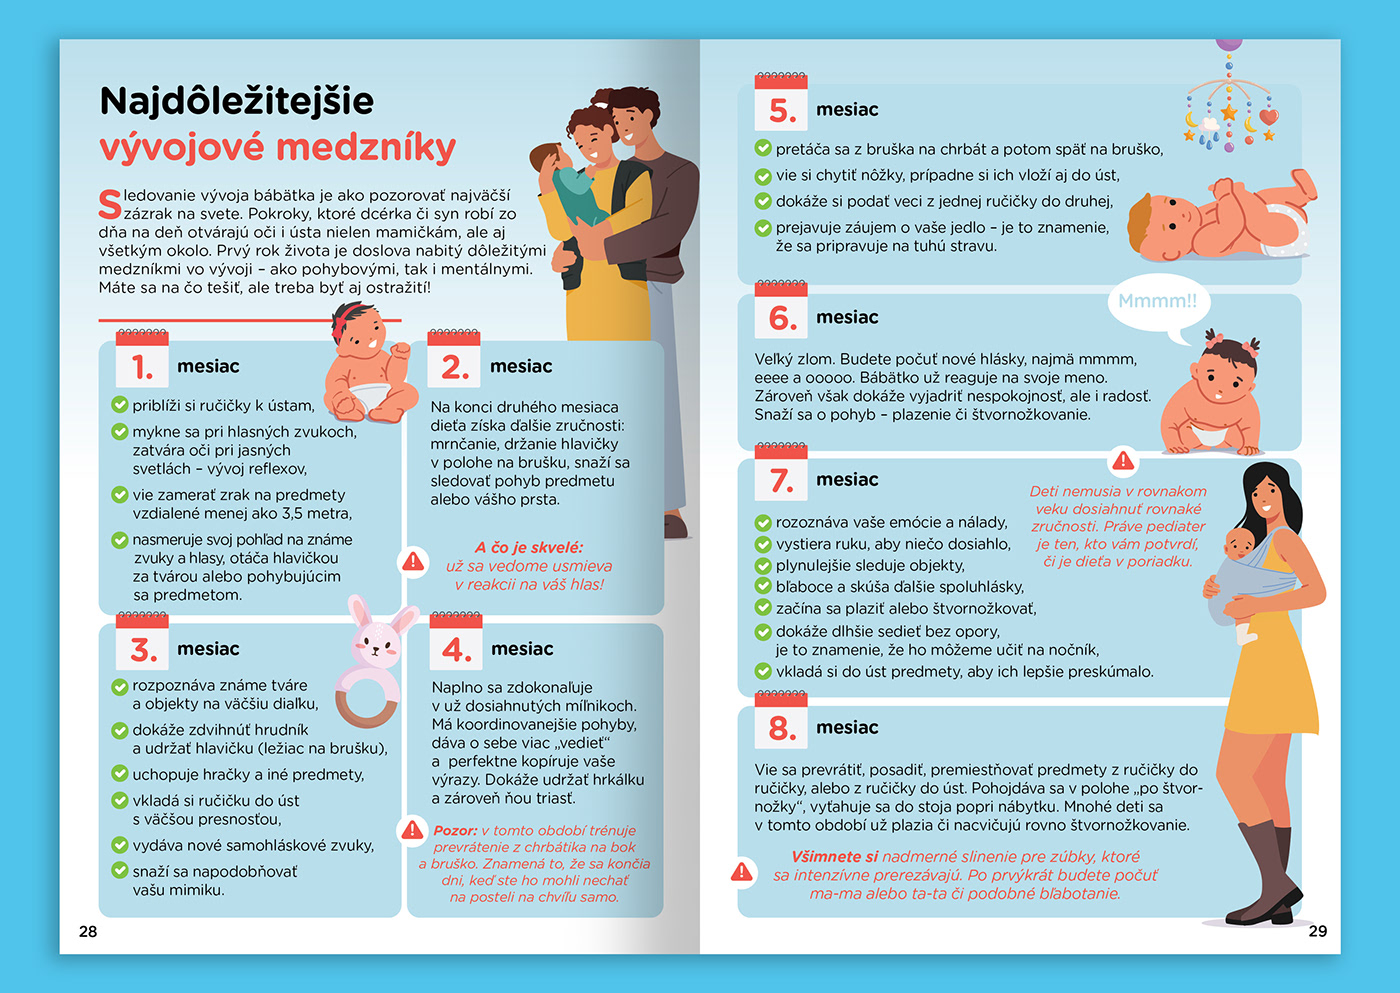 brochure design design infographics graphic design  ILLUSTRATION  Health hospital medicine medical